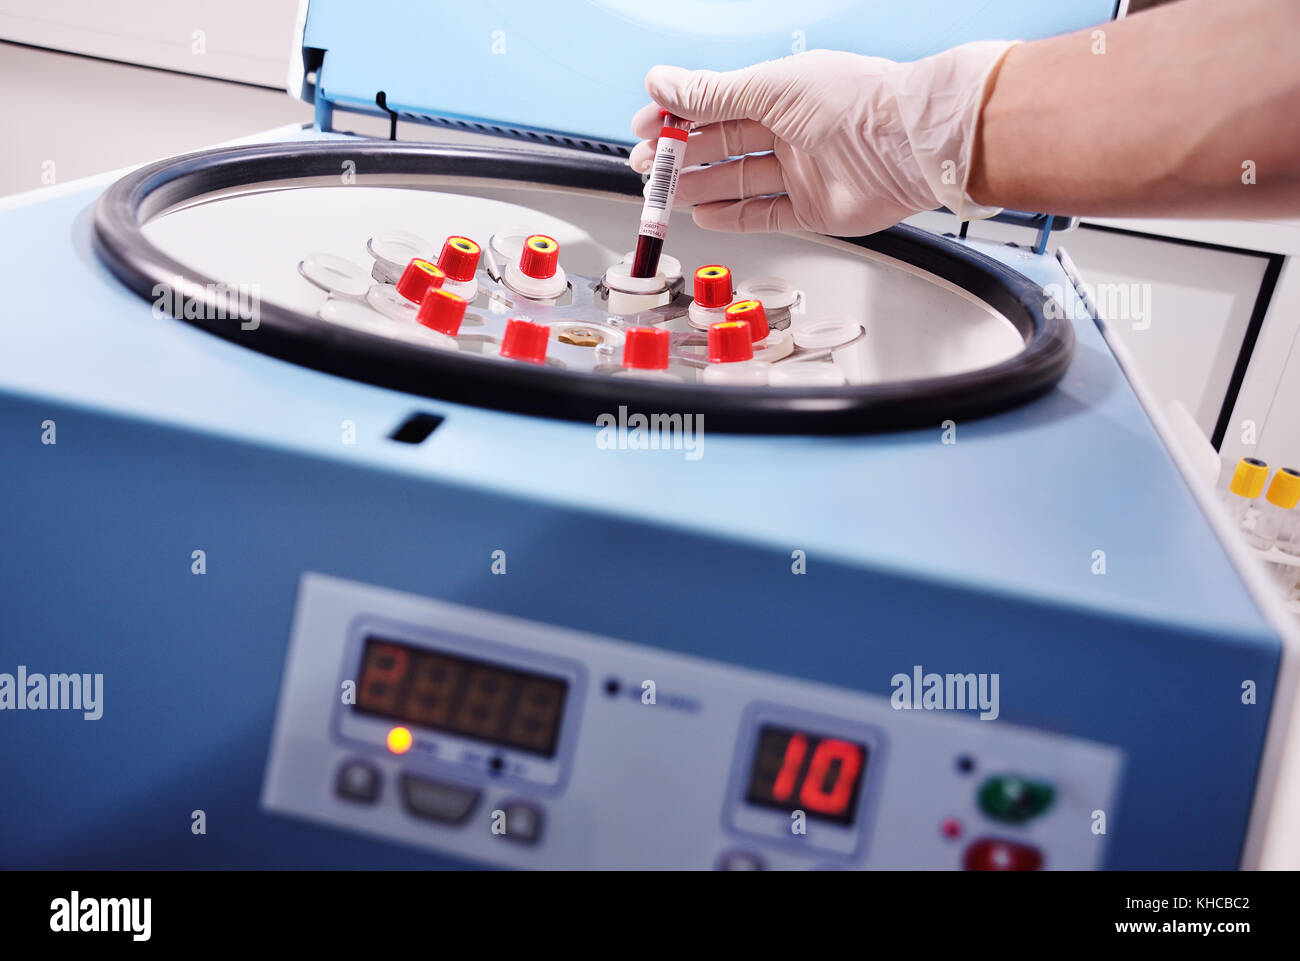 Medical laboratory centrifuge Stock Photo